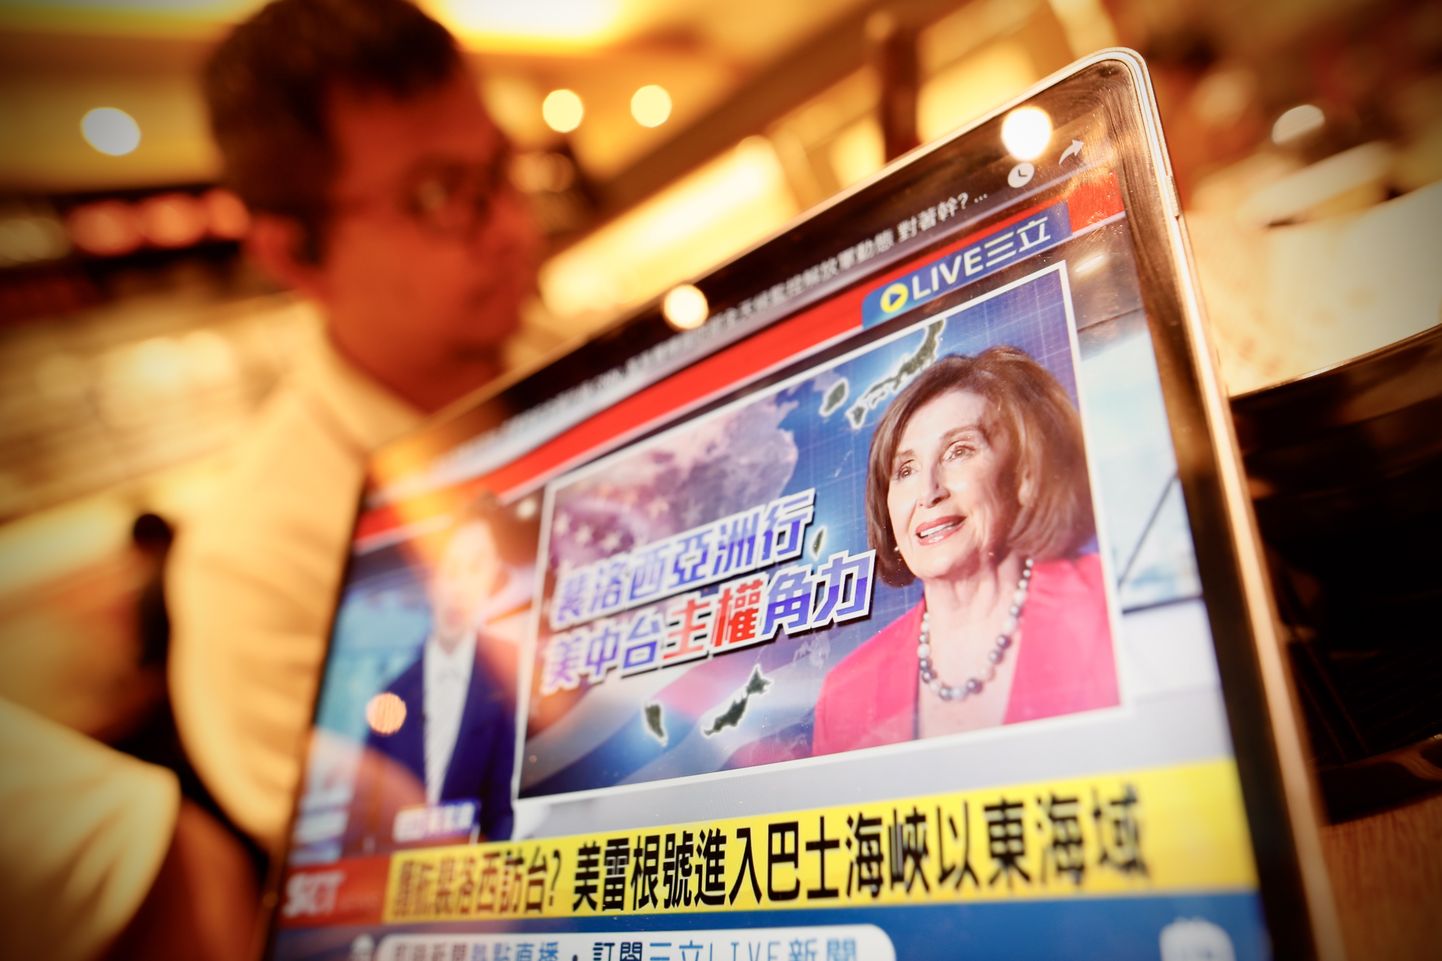 Житель смотрит новости об ожидаемом визите спикера Палаты представителей США Нэнси Пелоси в Тайбэй.